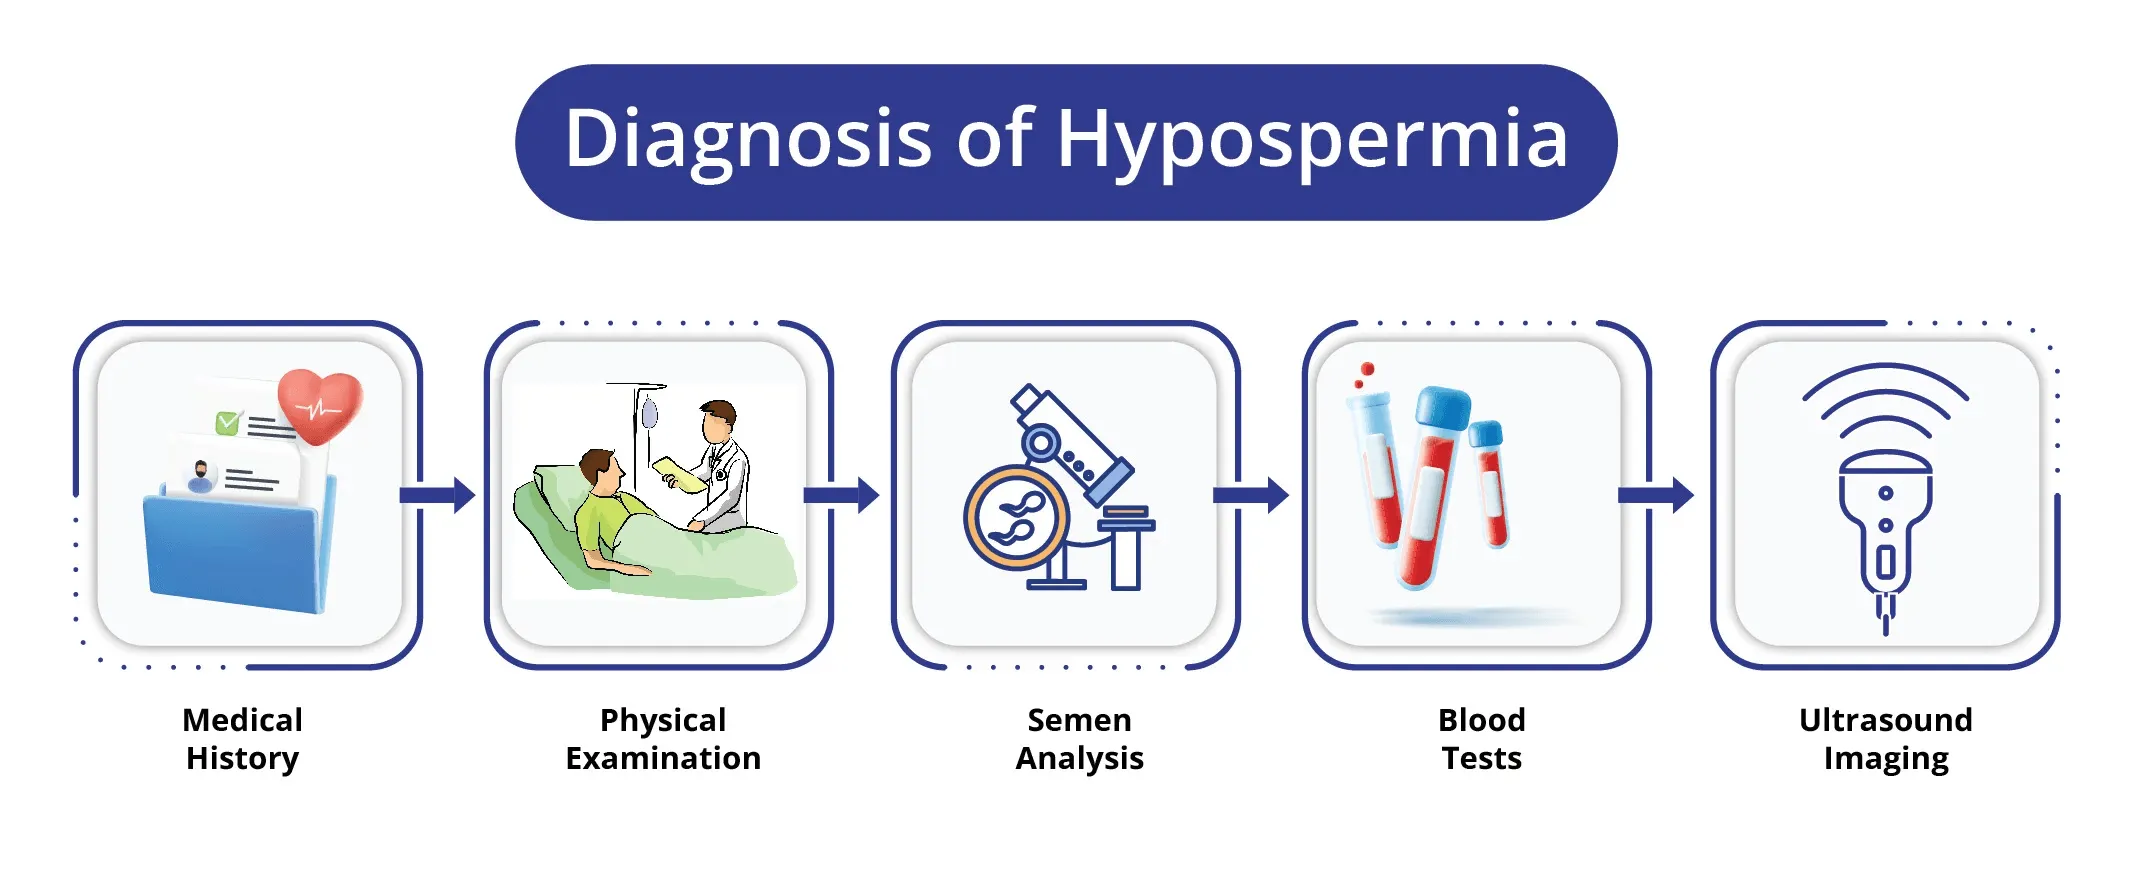 Diagnosis of Hypospermia 